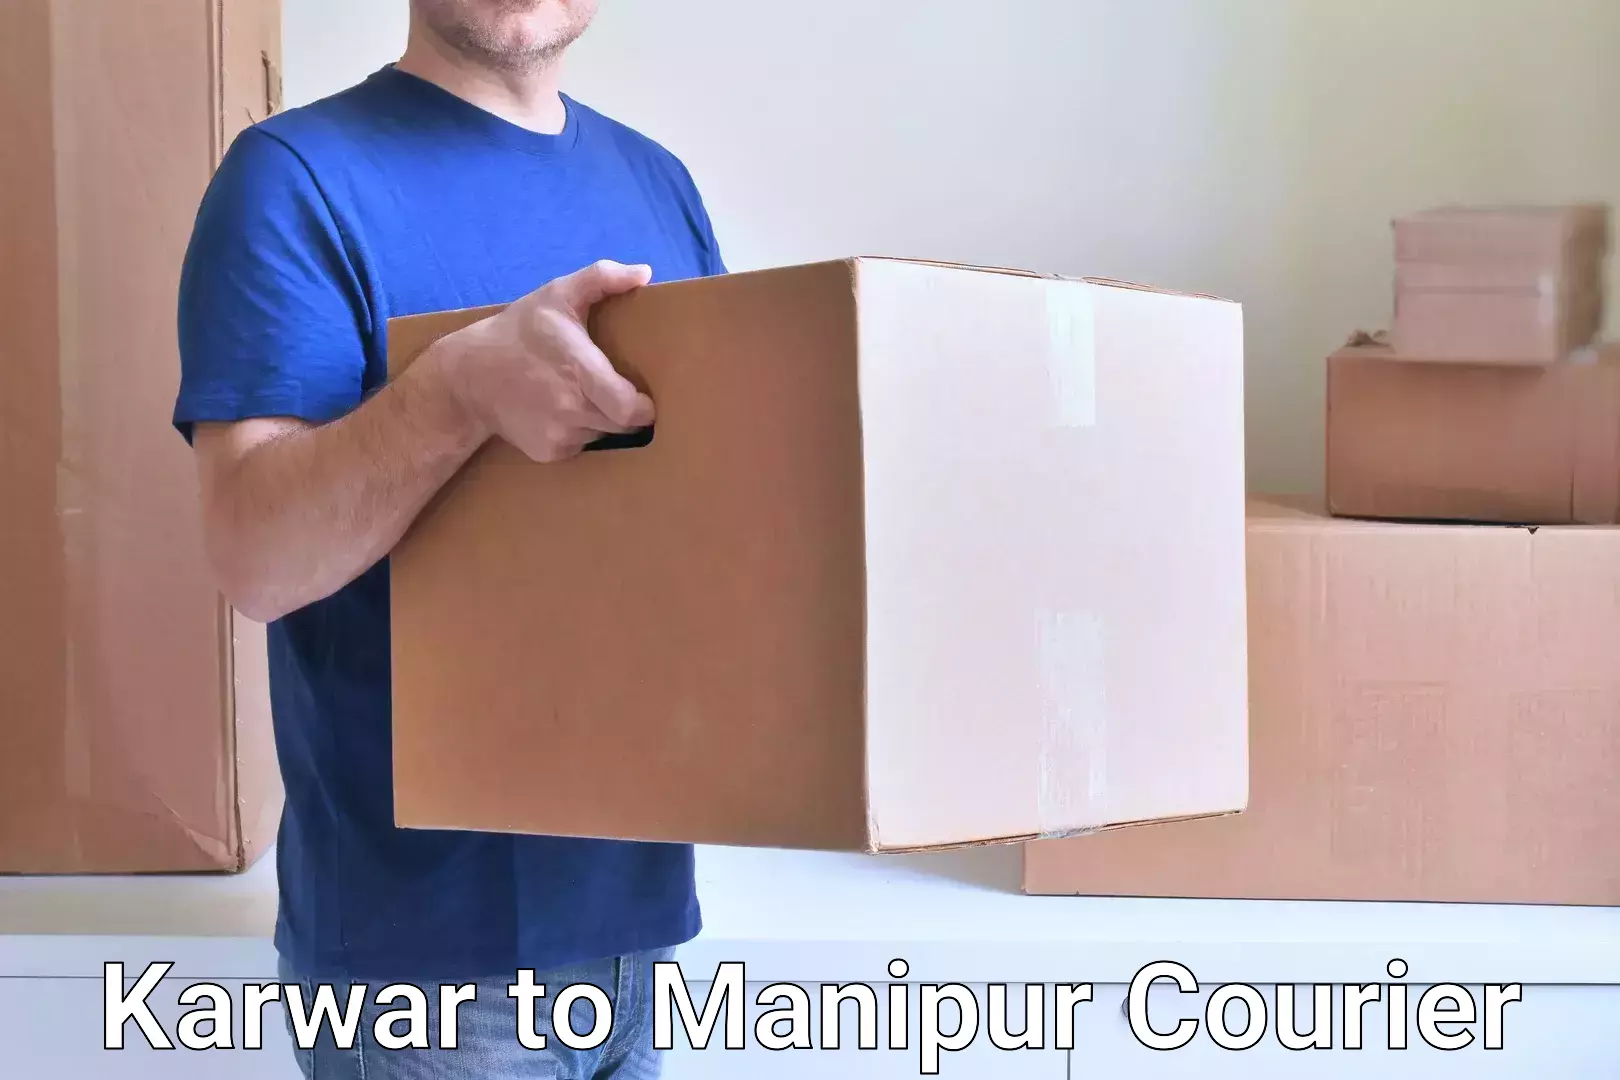 Next-generation courier services Karwar to Manipur